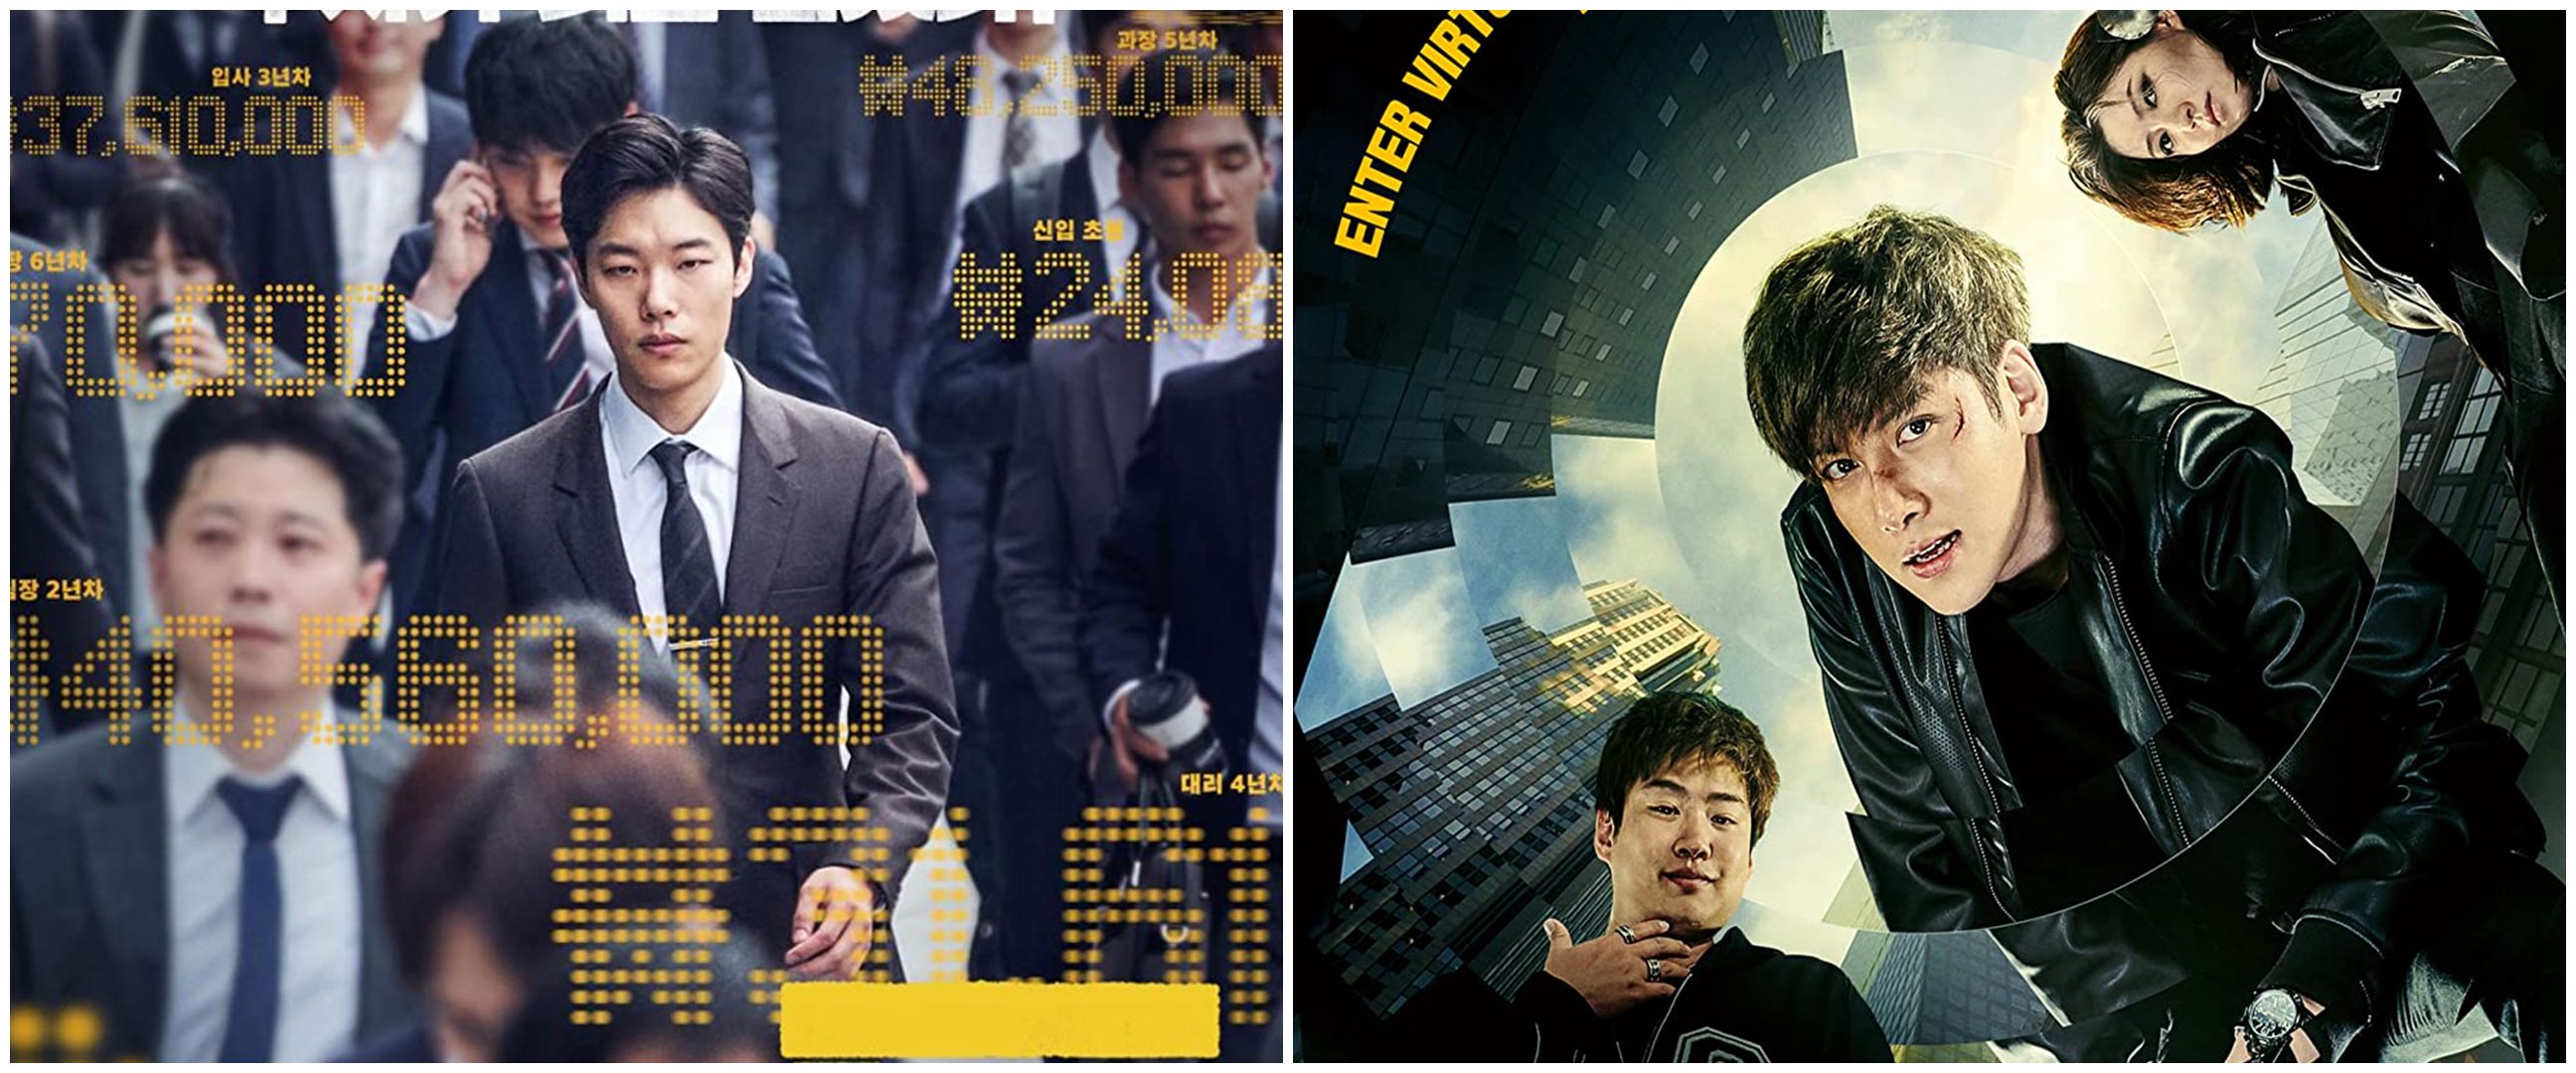 5 Film Korea tentang hacker, Fabricated City penuh adegan baku hantam